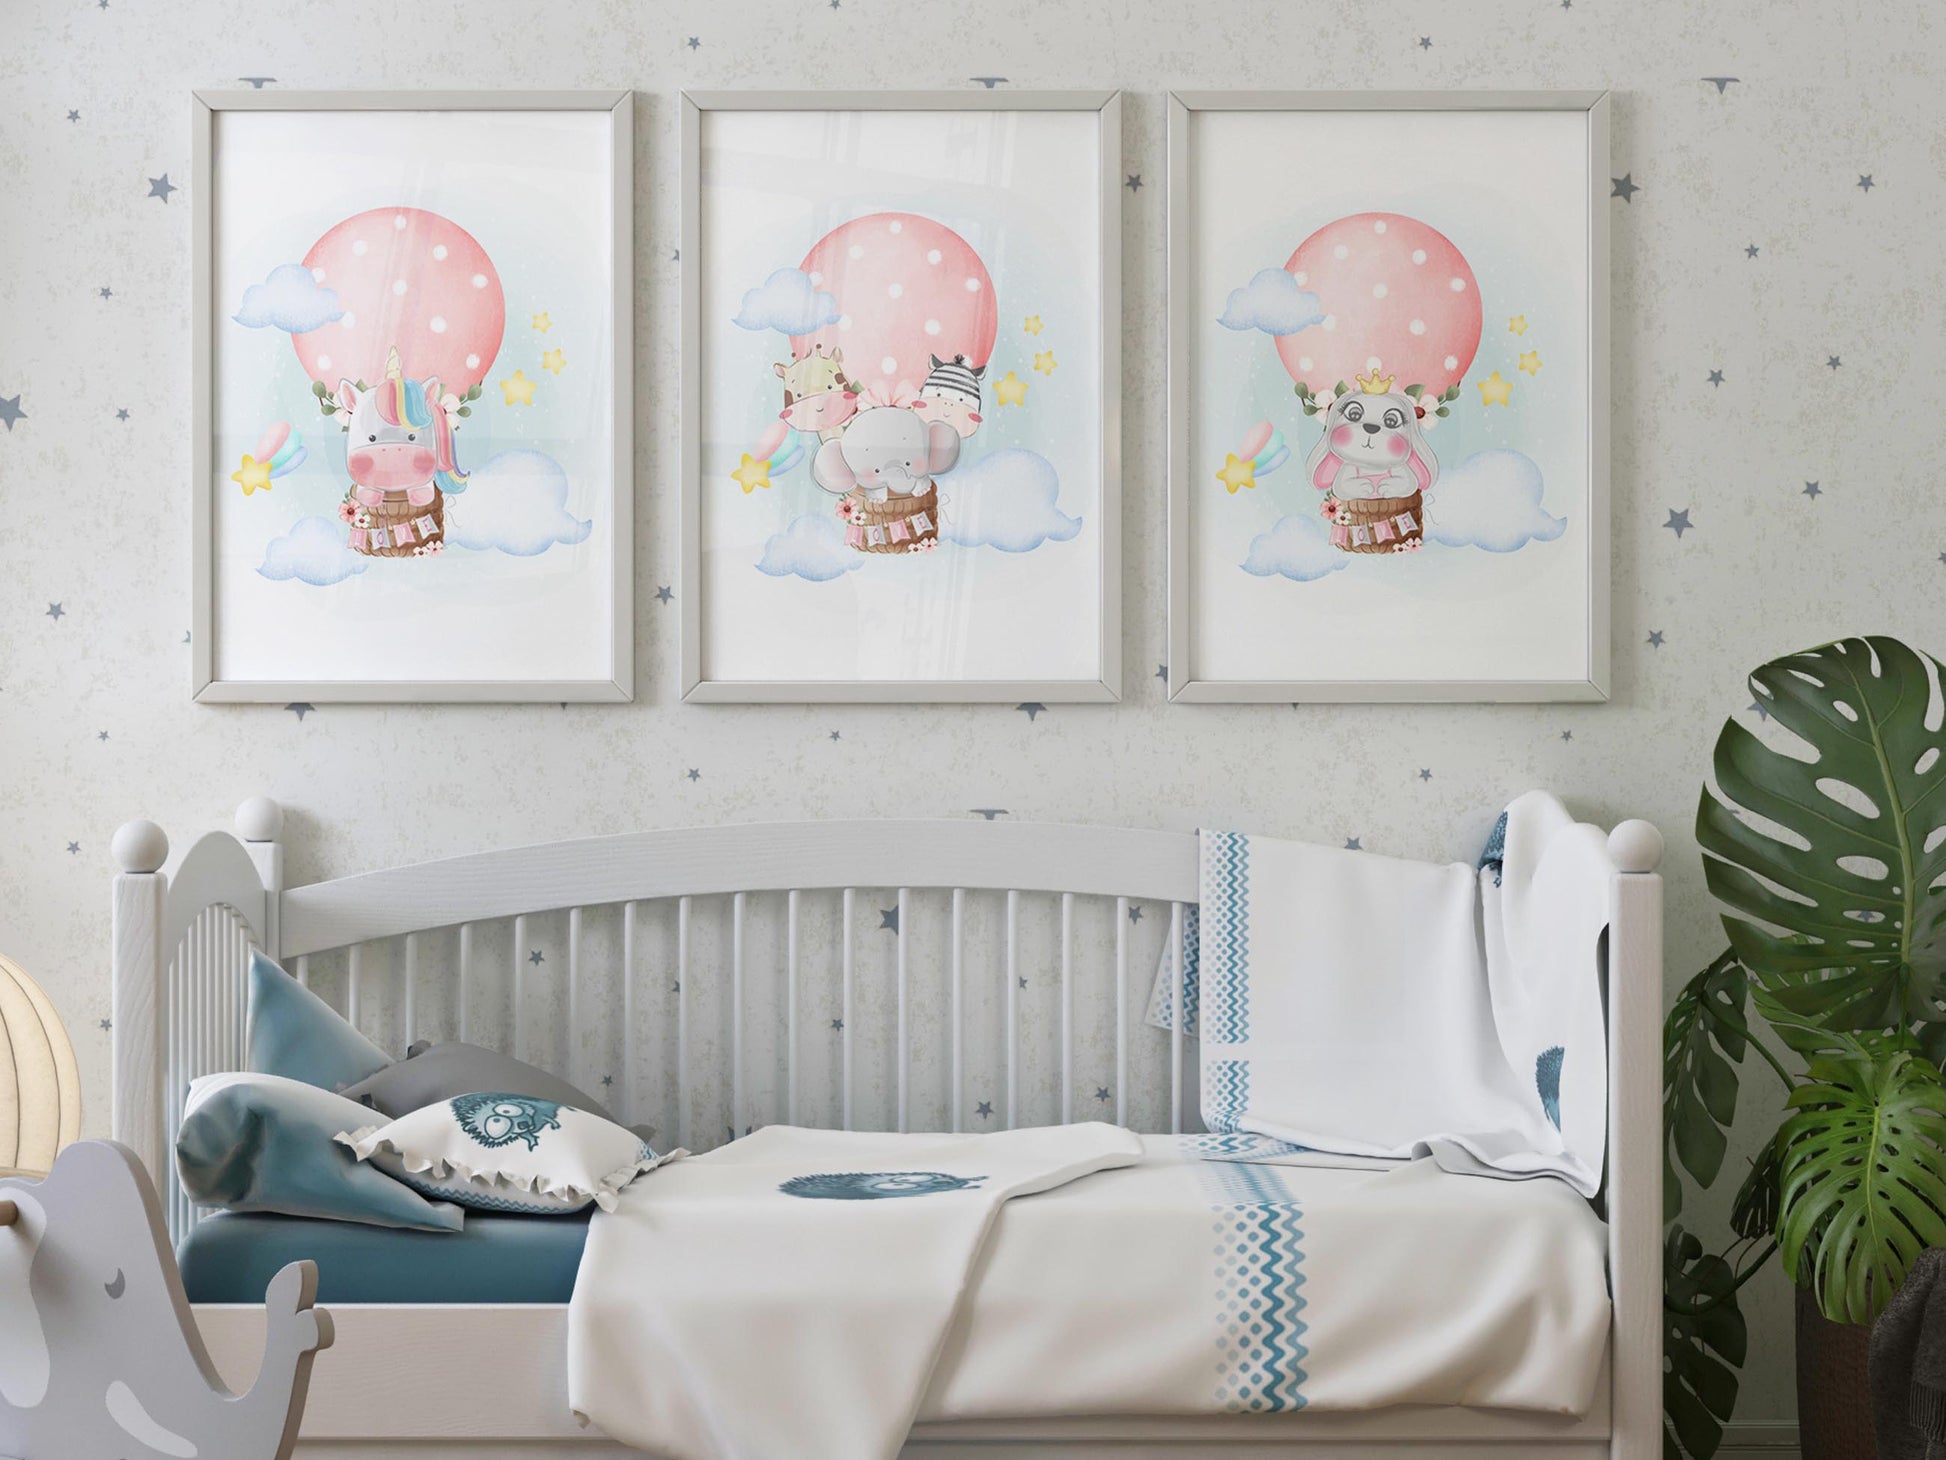 Customized baby shower gift: Framed nursery wall art for kids' room decor.